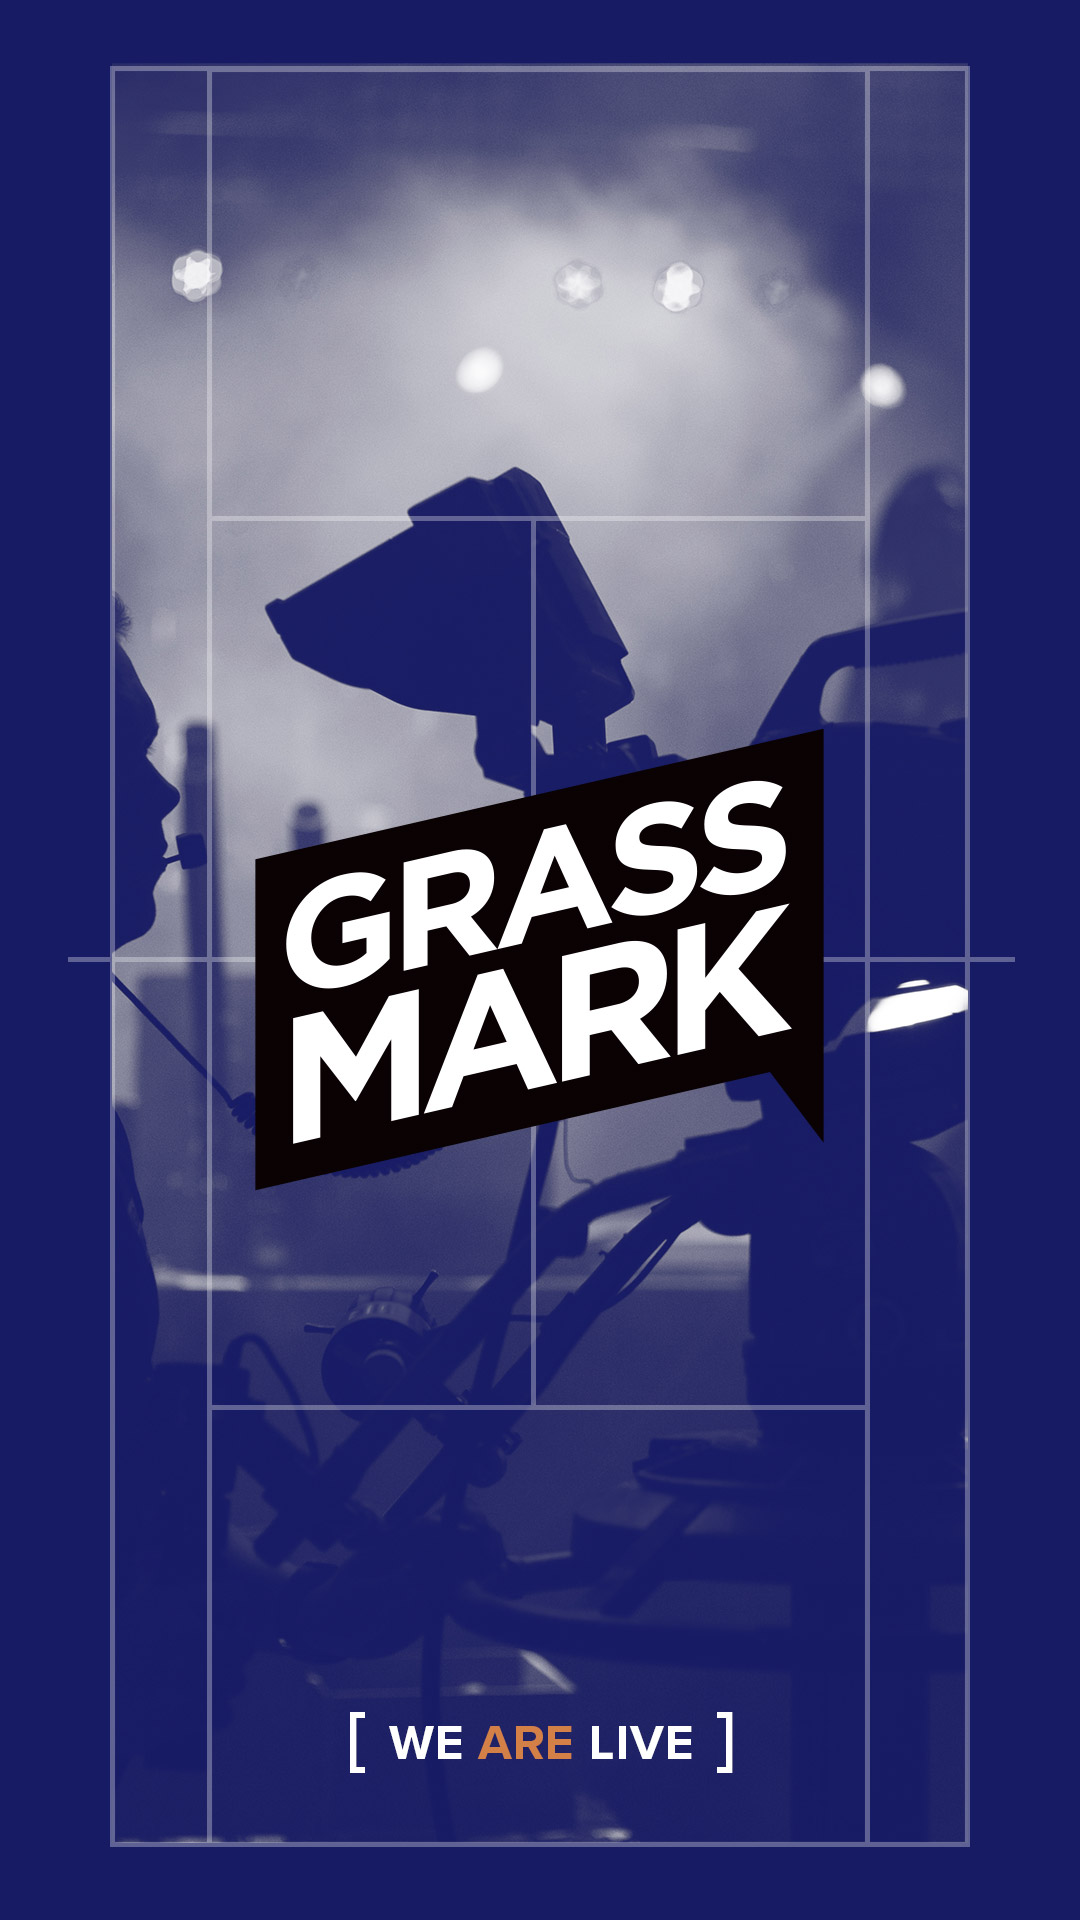 Grassmark – We are live.